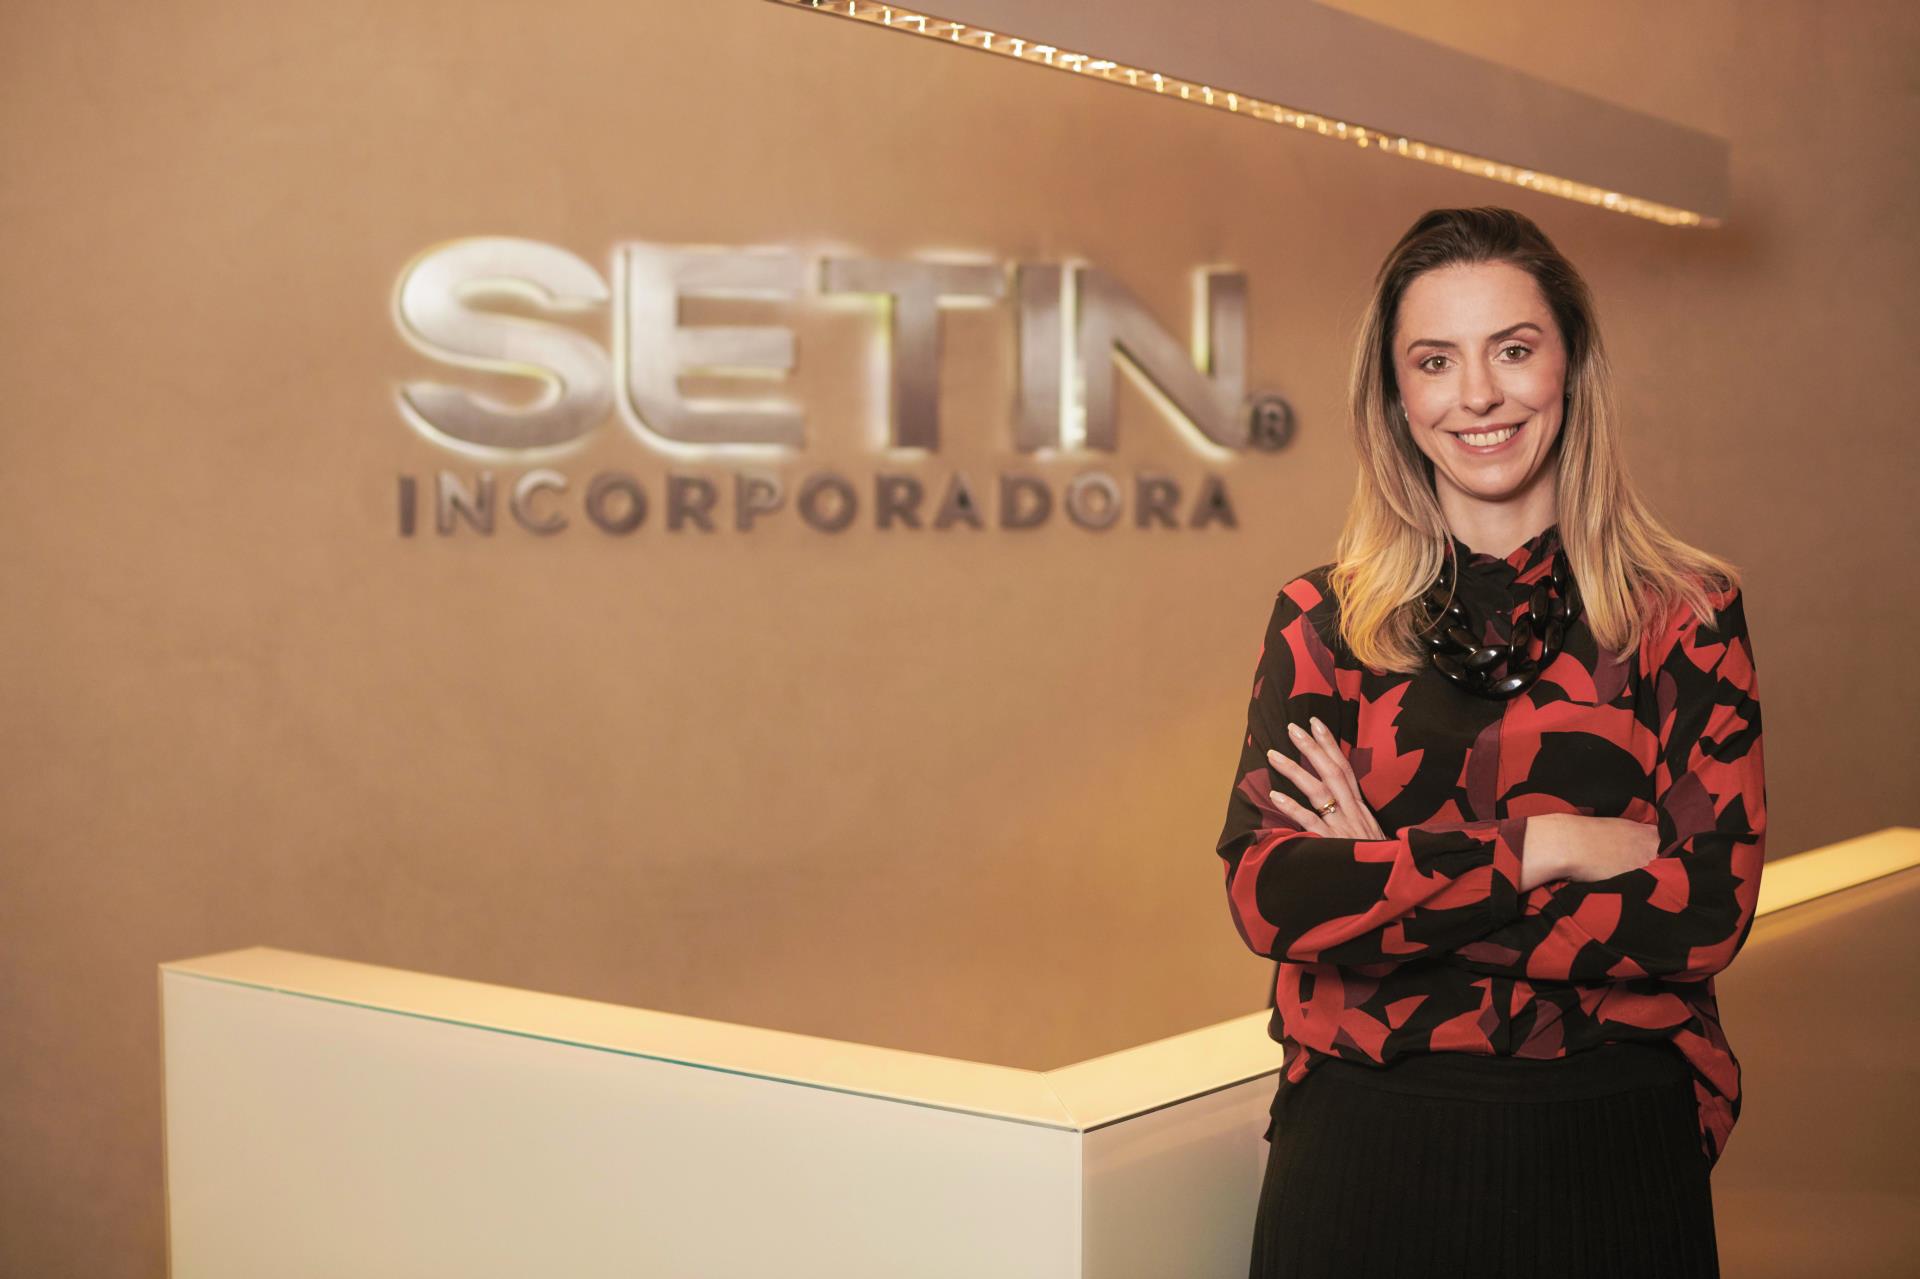 Bianca Setin - Diretora de Operações da Setin Incorporadora(1)